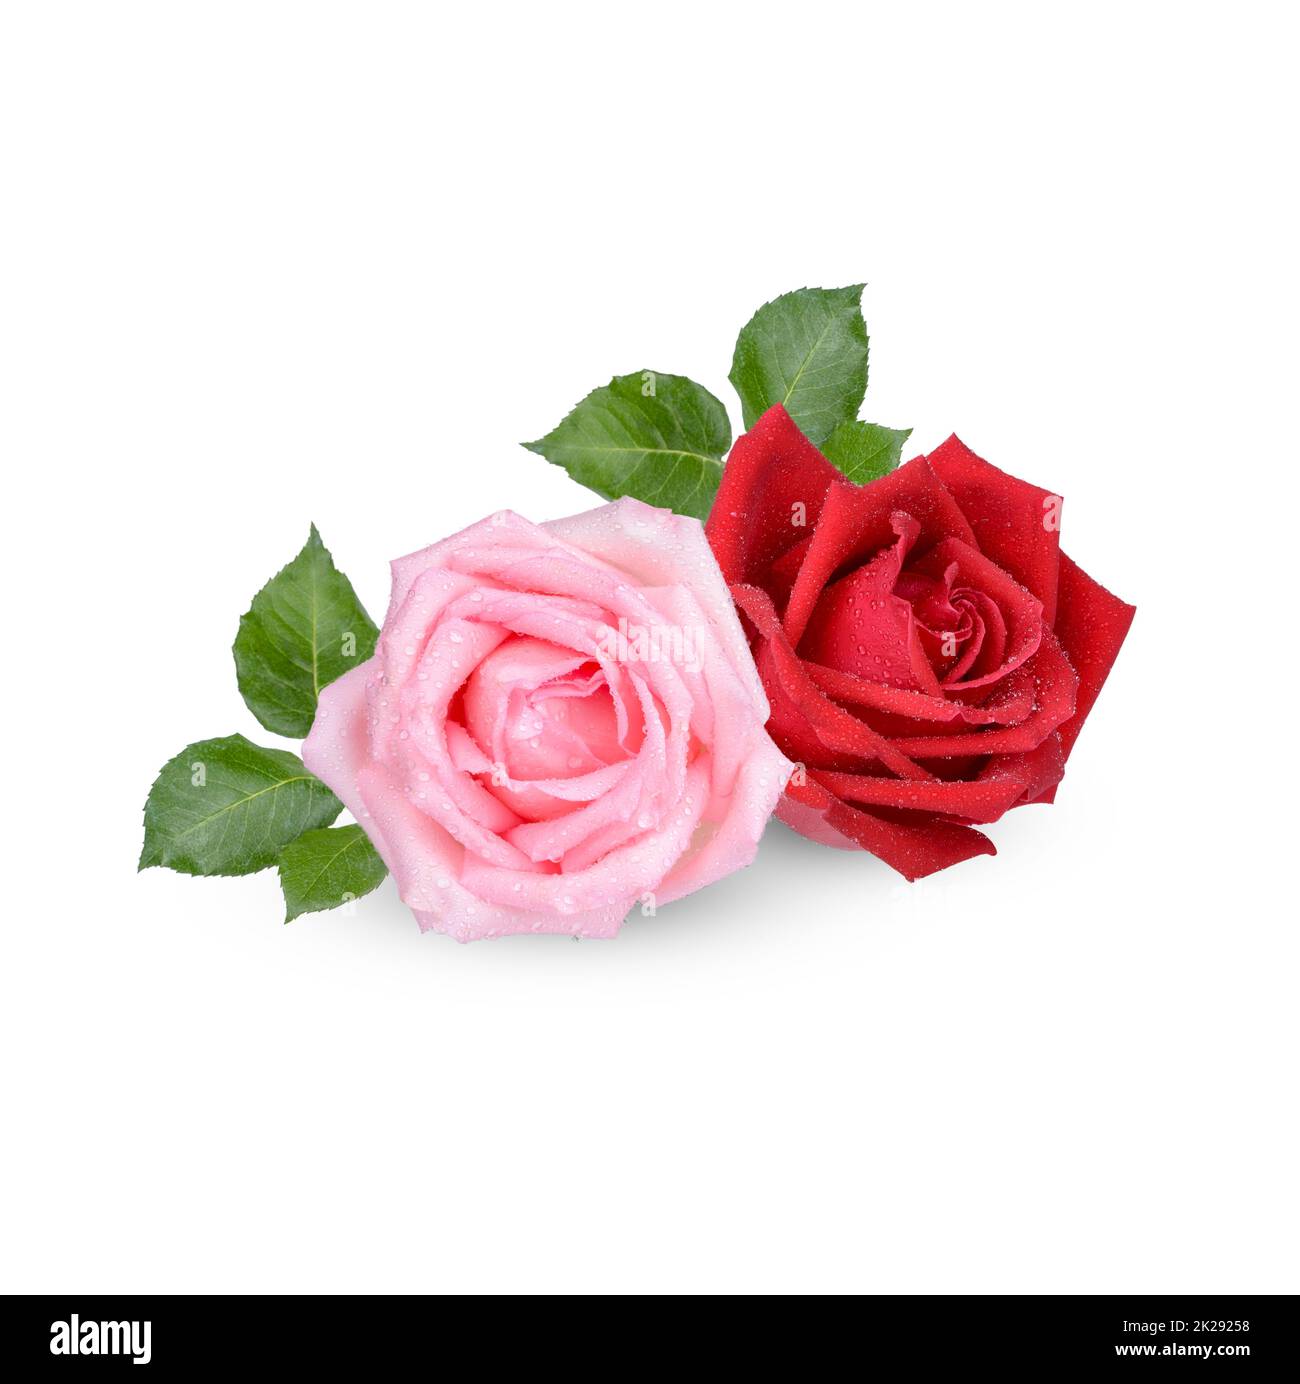 Rosa rossa e rosa con gocce d'acqua isolate su sfondo bianco Foto Stock